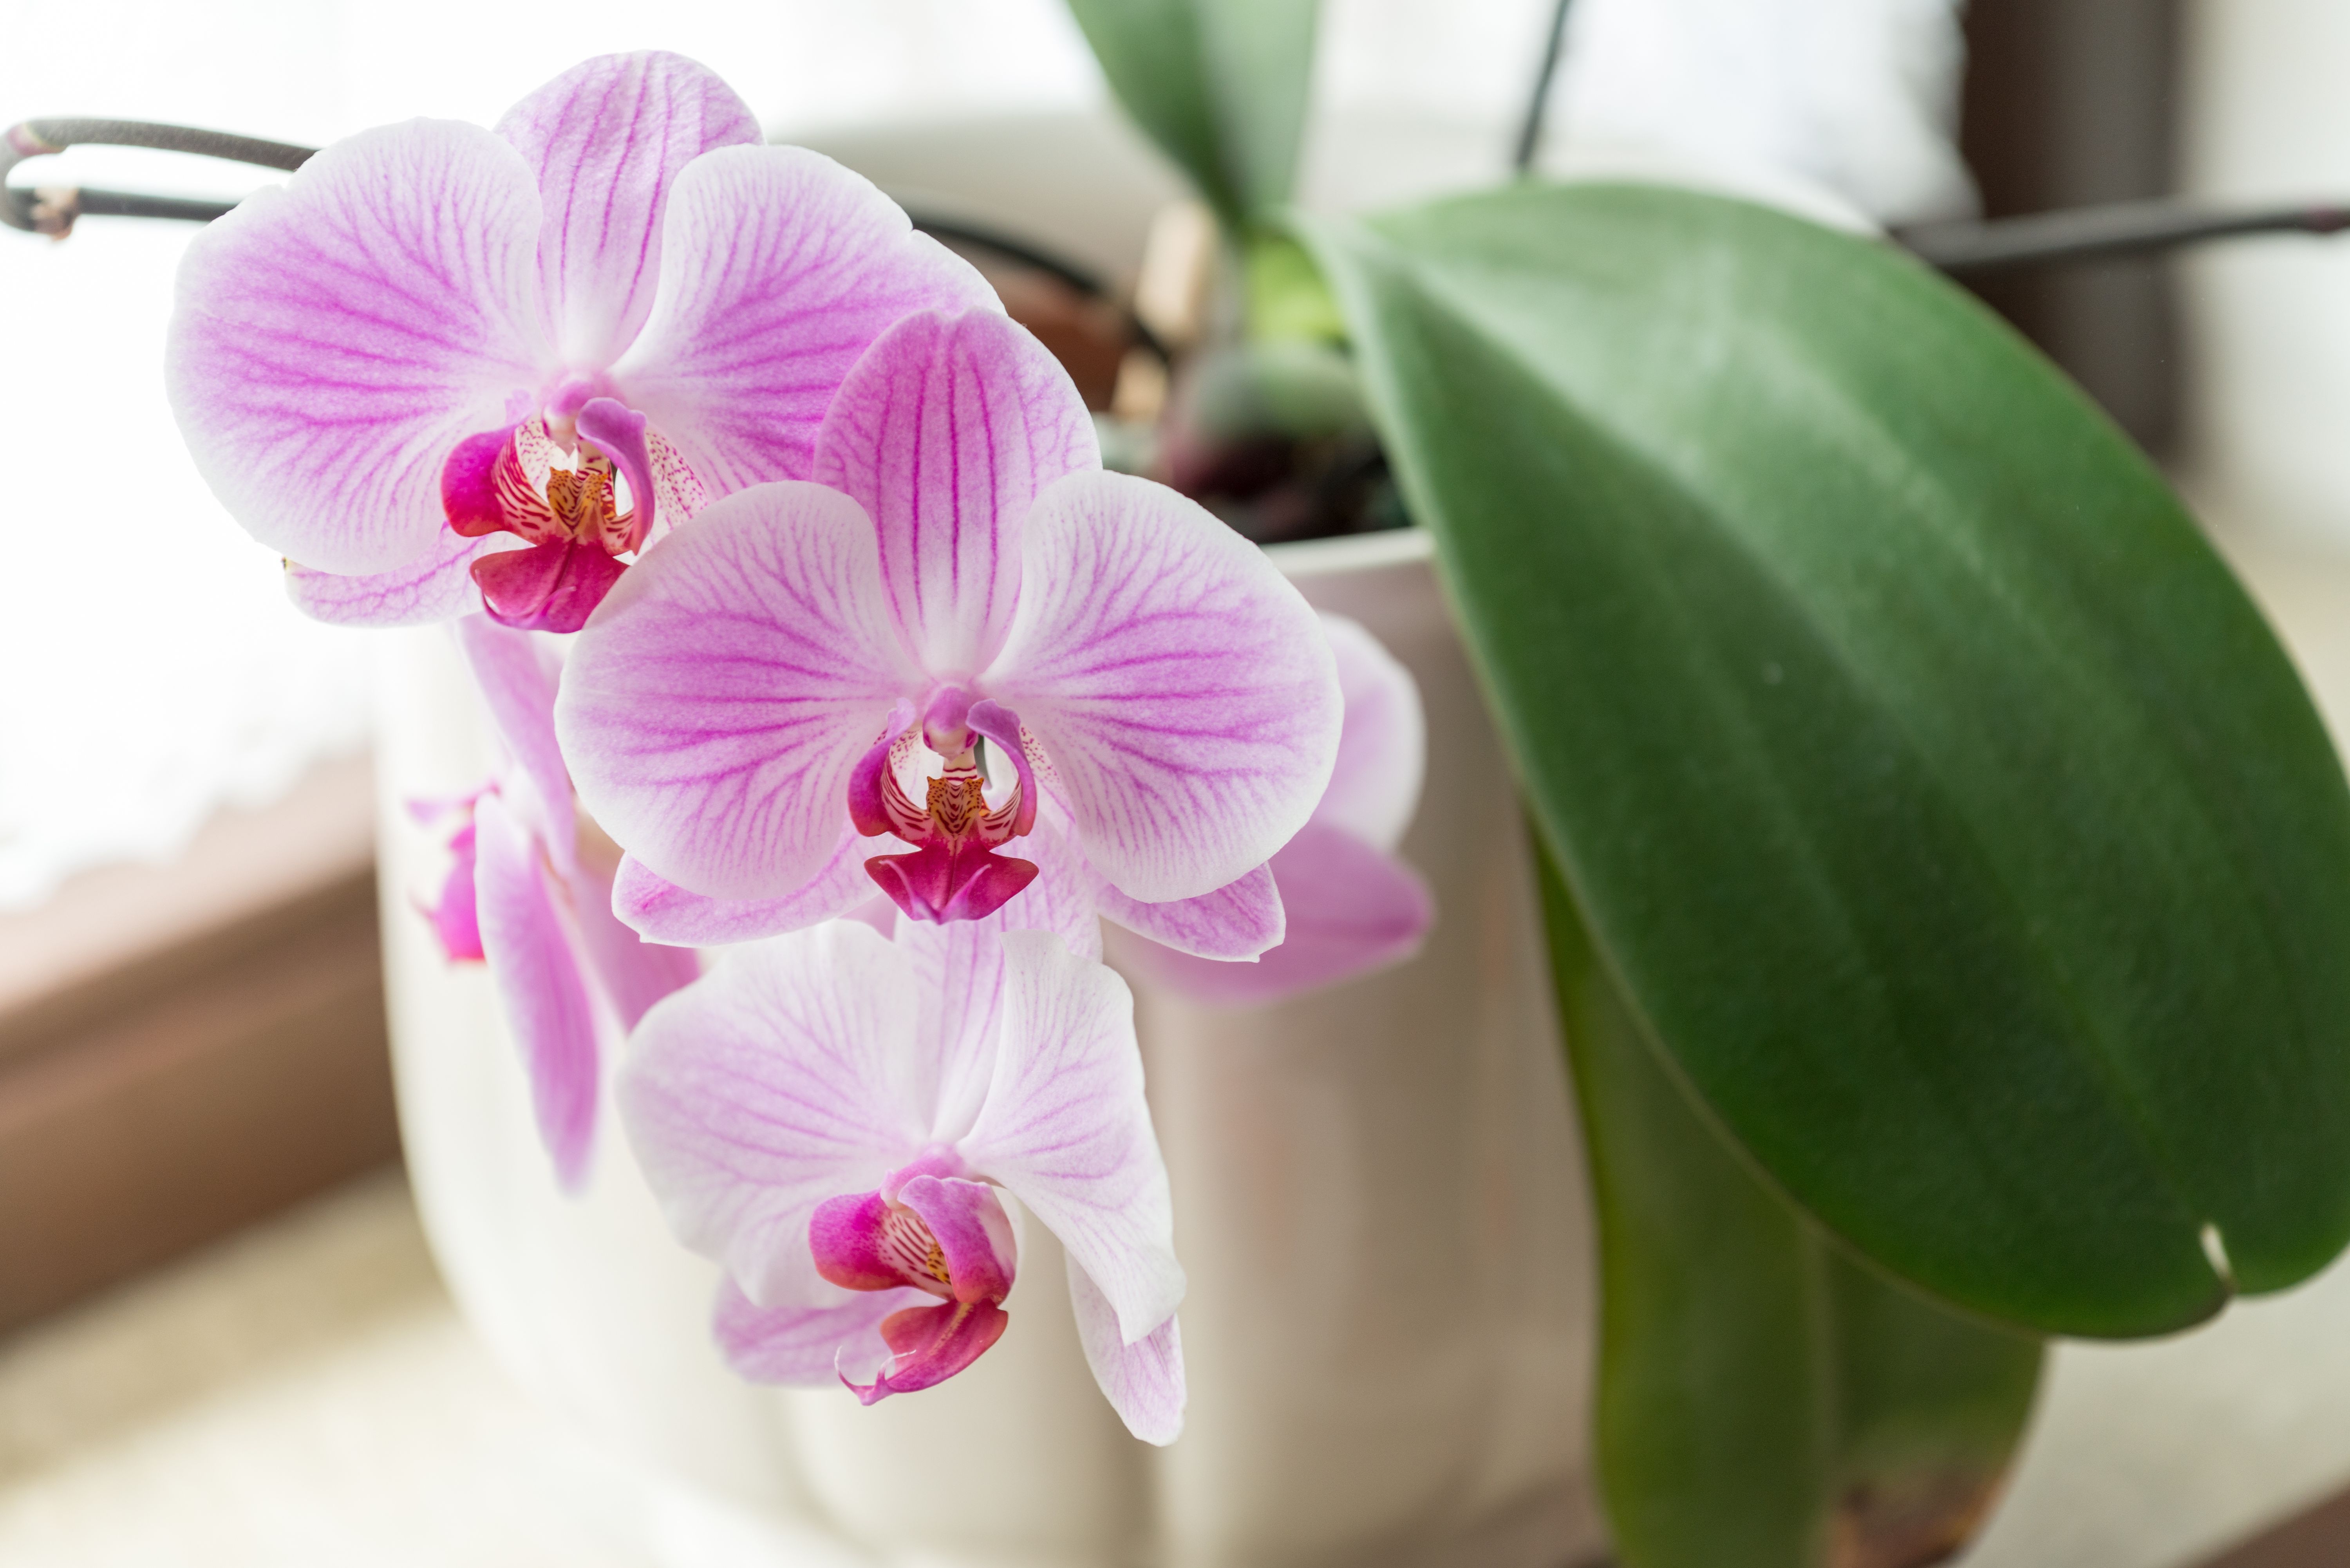 Orchideen bevorzugen einen halbschattigen Standort, an dem es weder zu warm noch zu kalt ist.